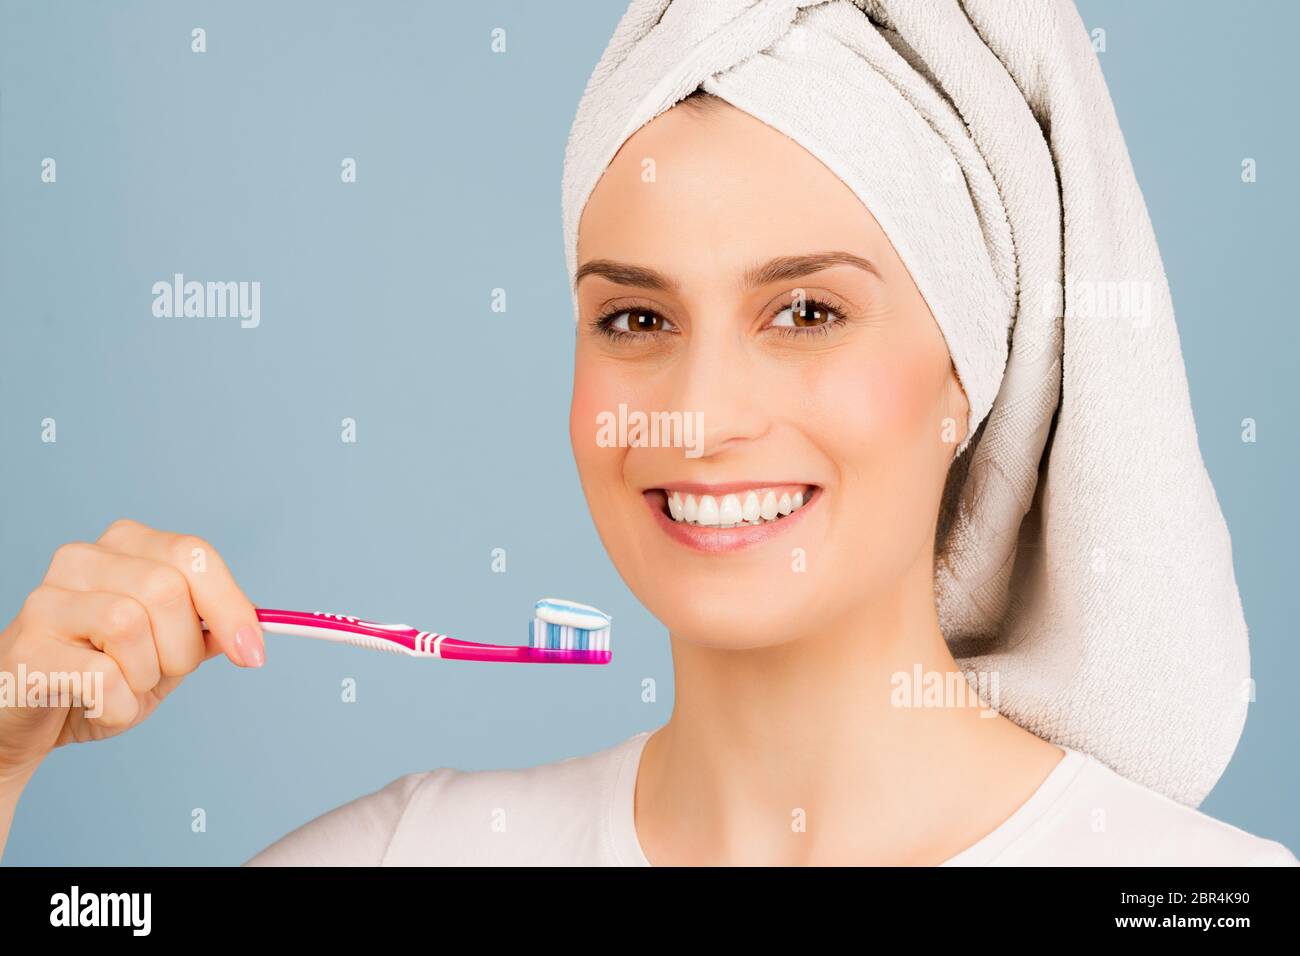 Die schöne lächelnde Frau mit weißem Handtuch auf dem Kopf ist bereit, Zähne auf hellblauem Hintergrund zu putzen. Stockfoto